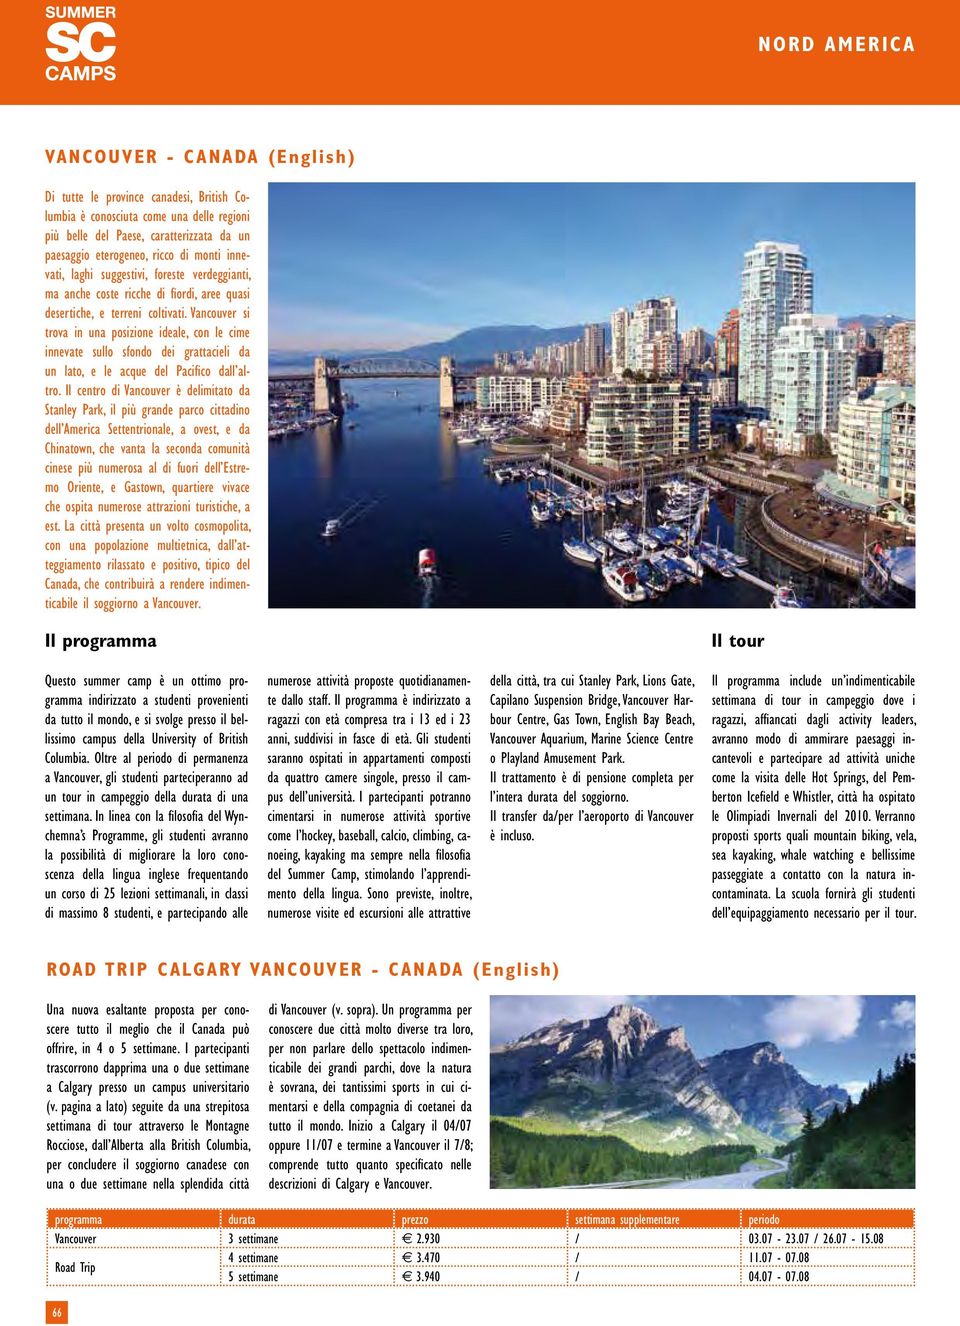 Vancouver si trova in una posizione ideale, con le cime innevate sullo sfondo dei grattacieli da un lato, e le acque del Pacifico dall altro.